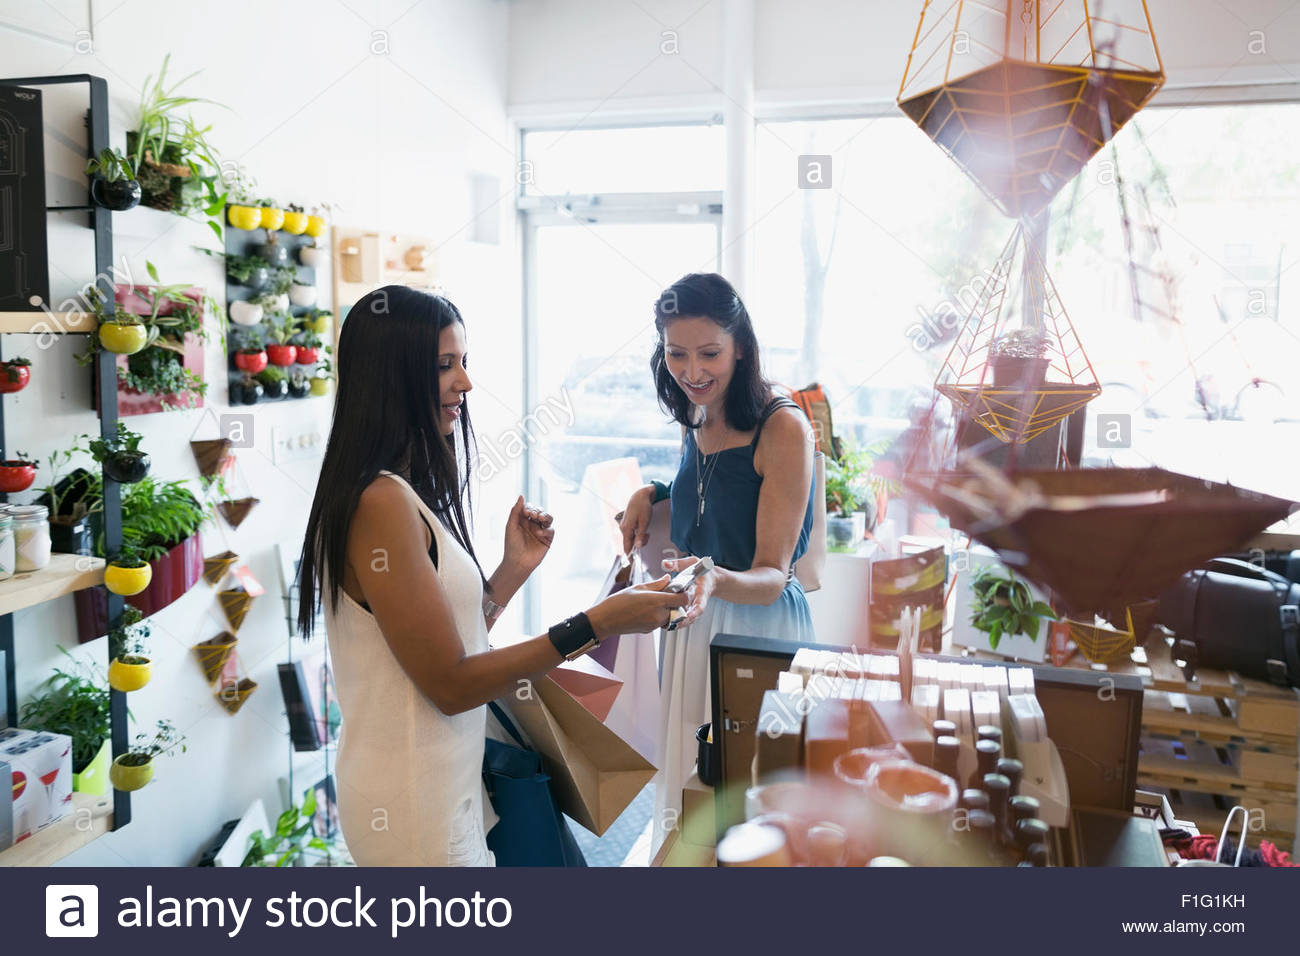 Women shopping in housewares shop Stock Photo